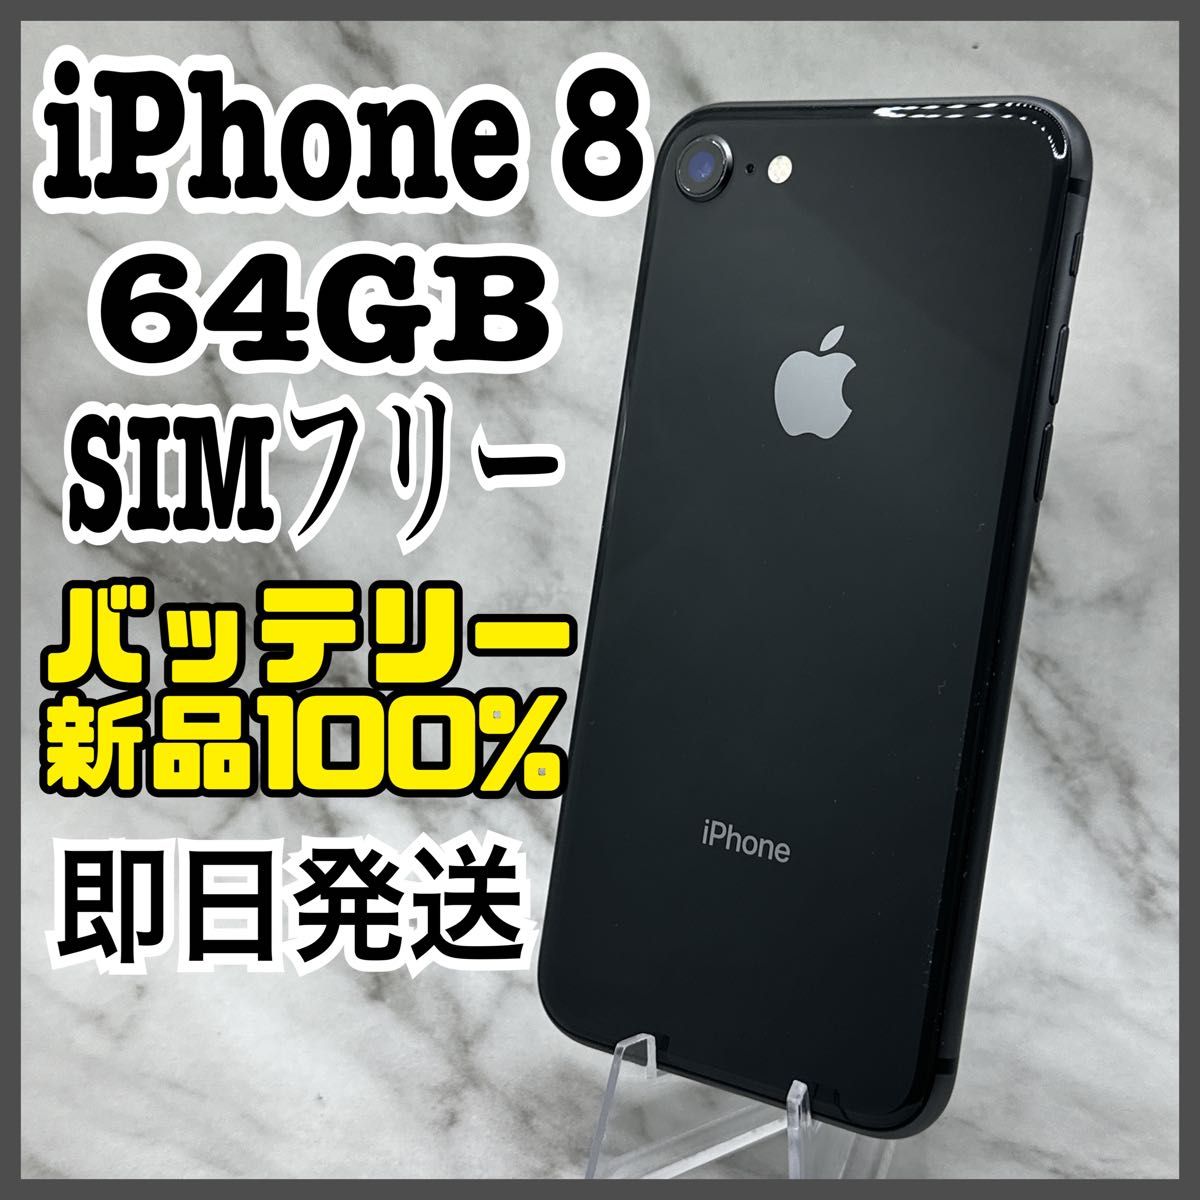 iPhone 8 Space Gray 64 GB SIMフリー - スマートフォン本体